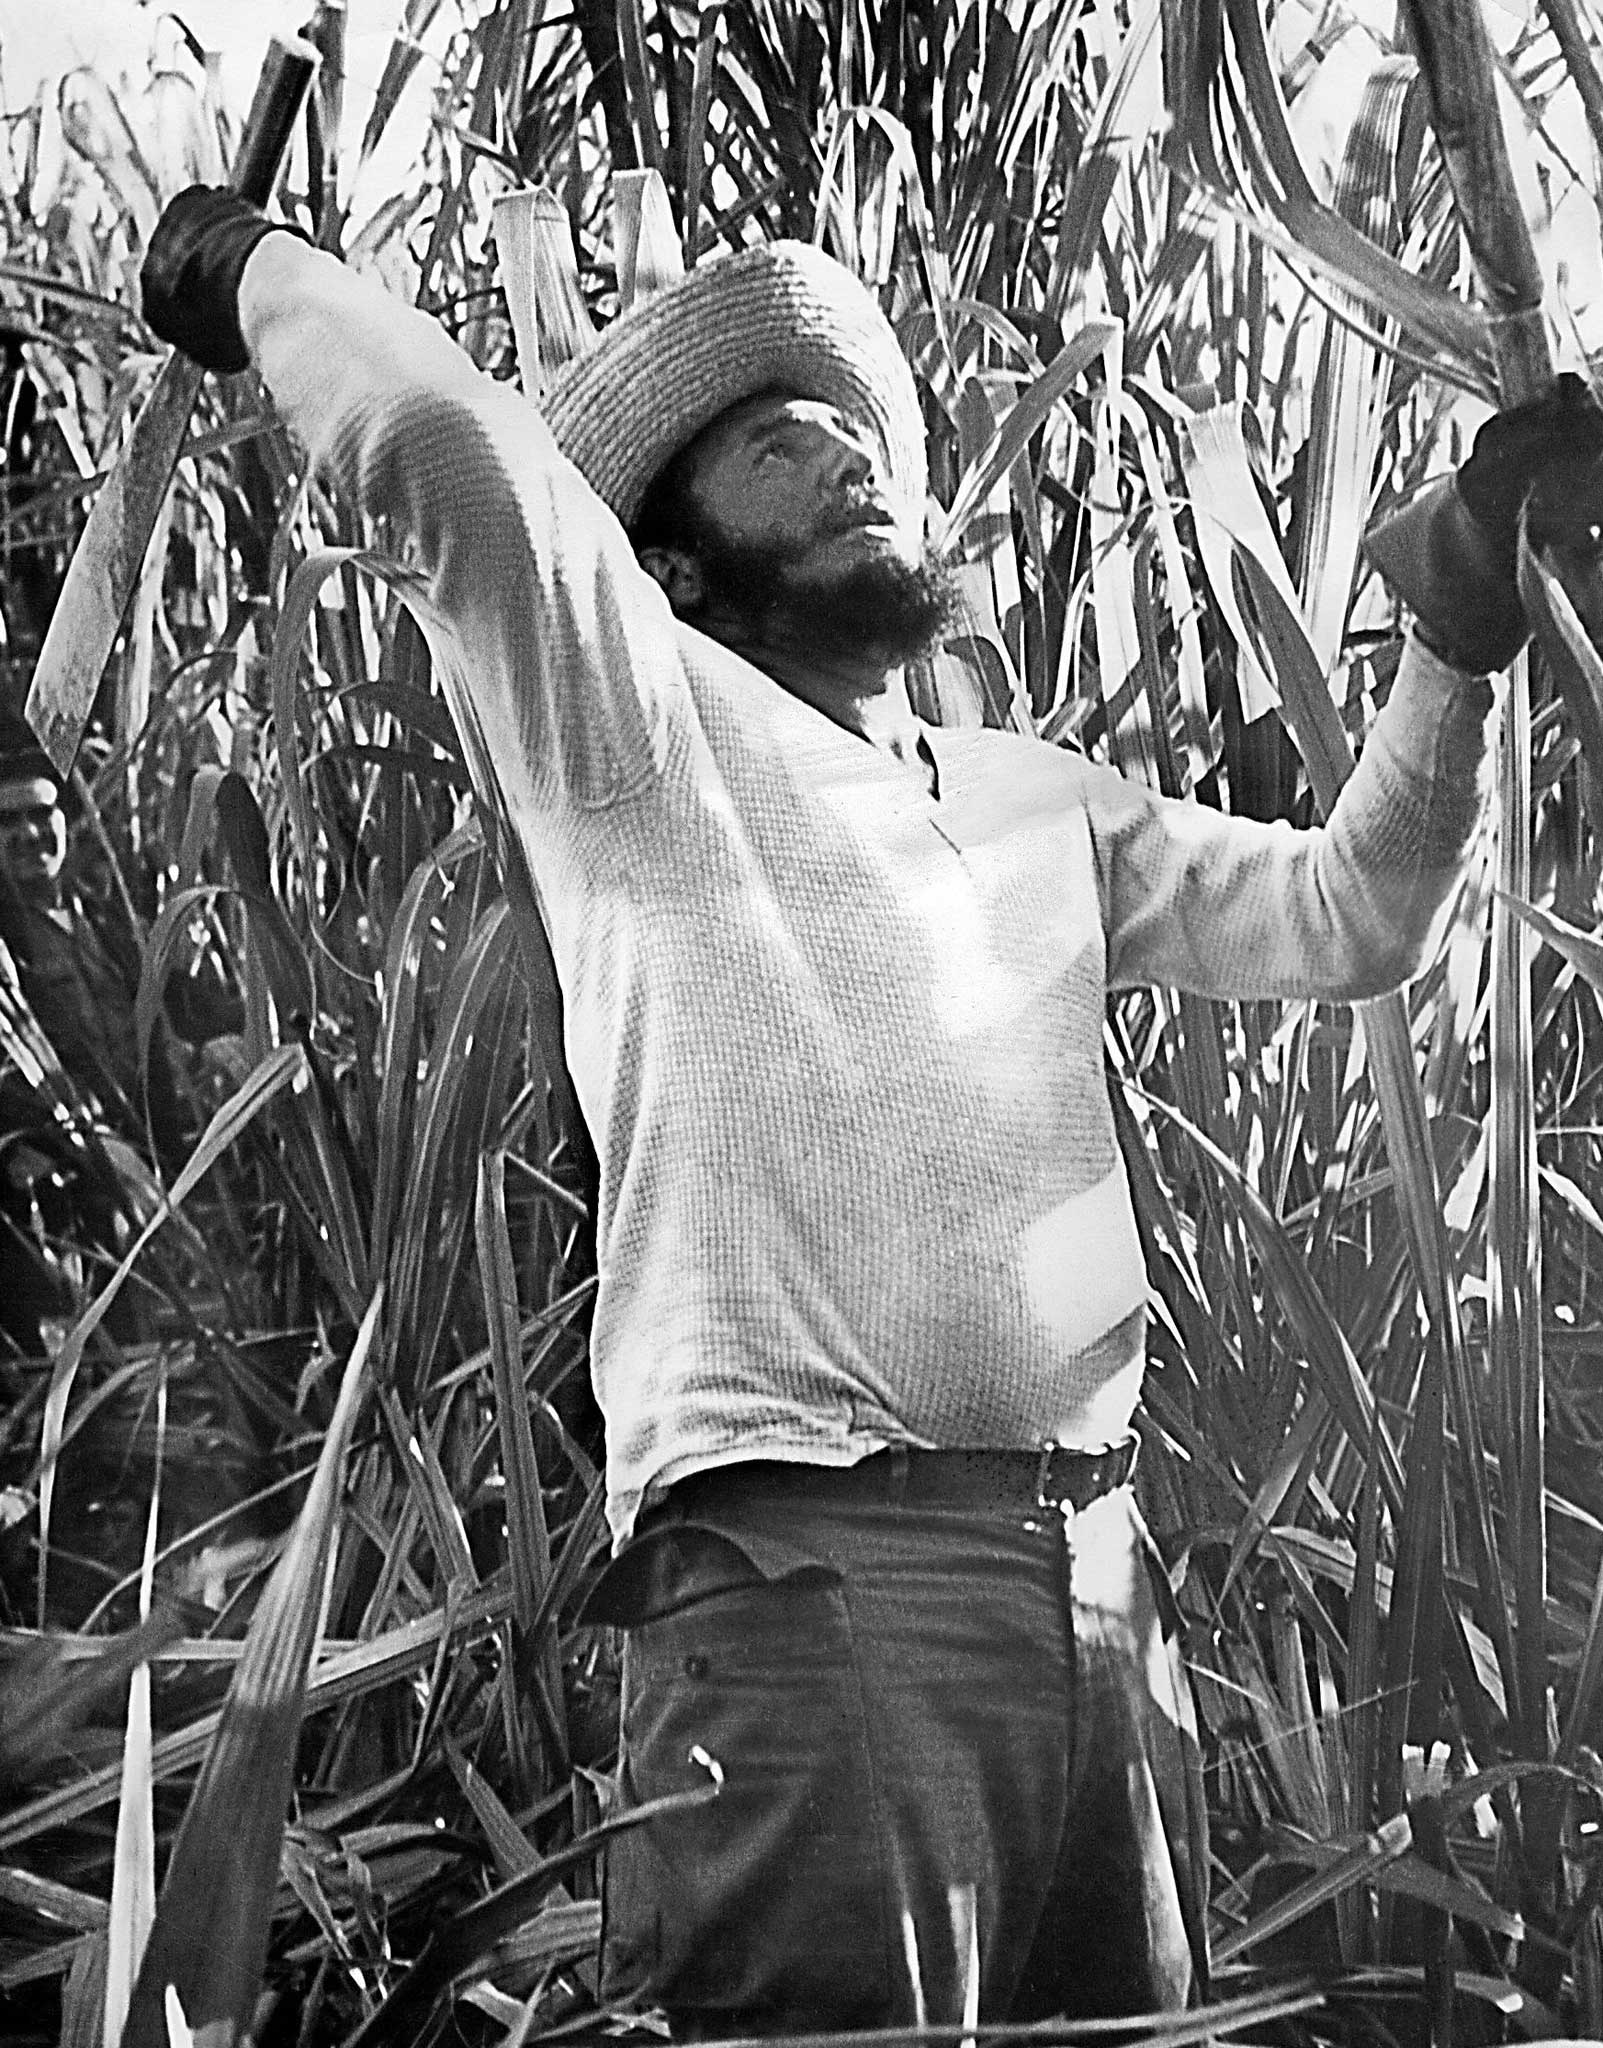 Ripe for revolt: Fidel Castro pictured cutting sugar cane in a field near Havana